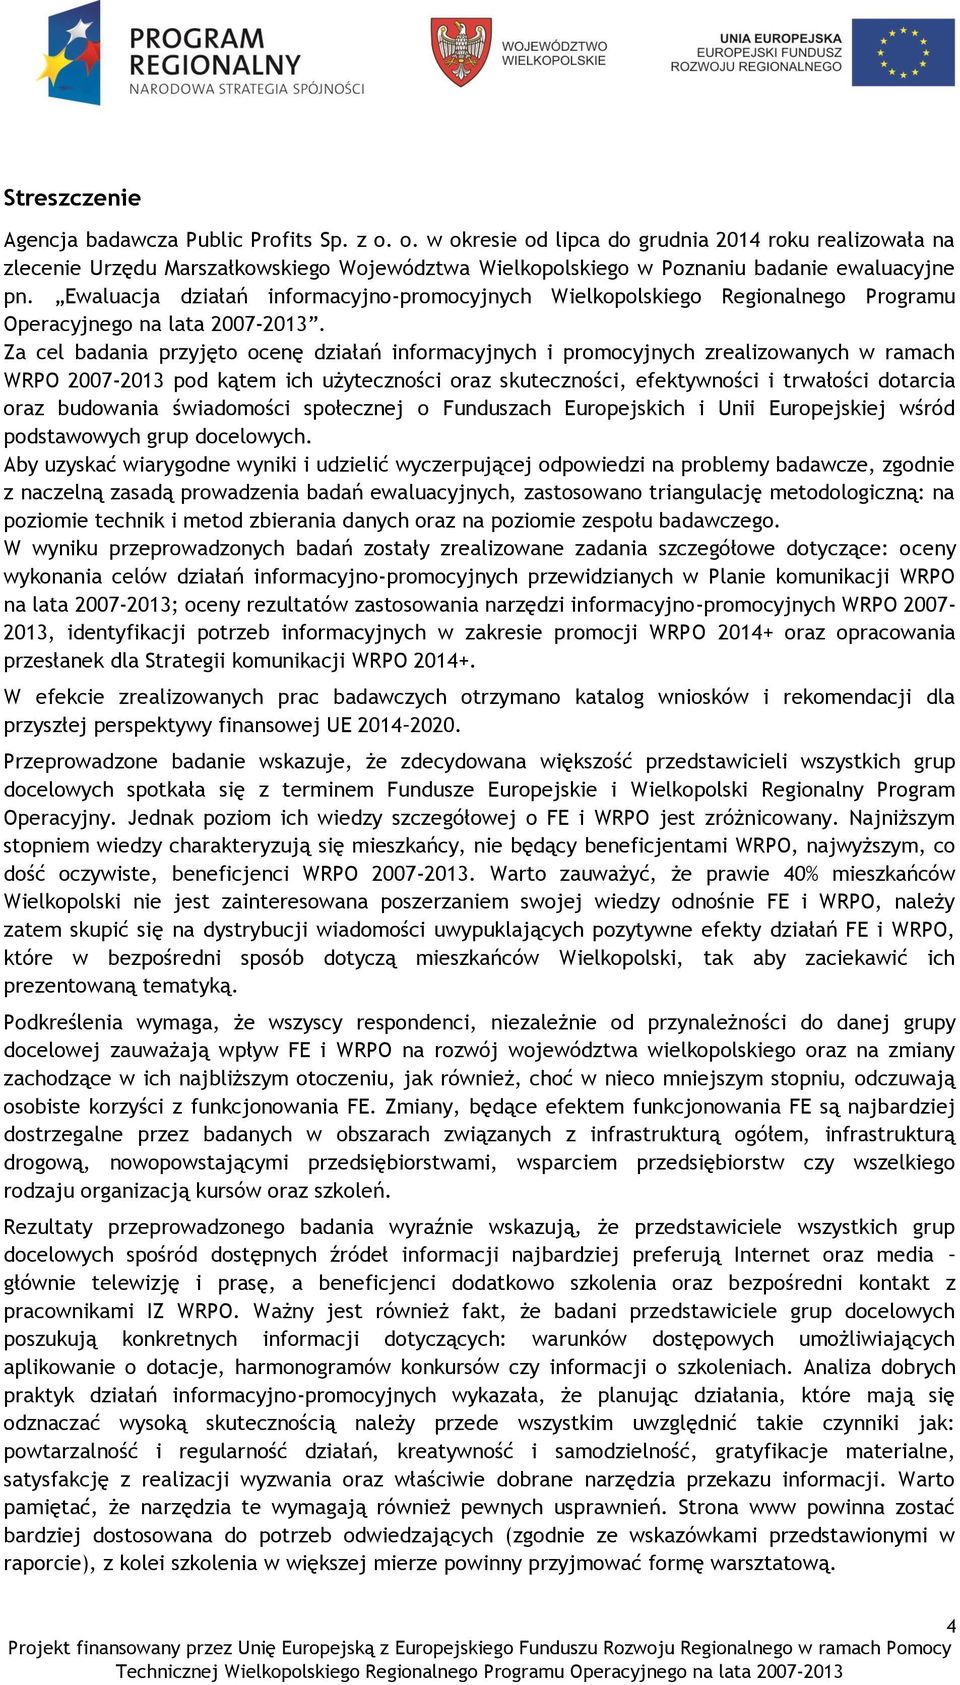 Ewaluacja działań informacyjno-promocyjnych Wielkopolskiego Regionalnego Programu Operacyjnego na lata 2007-2013.